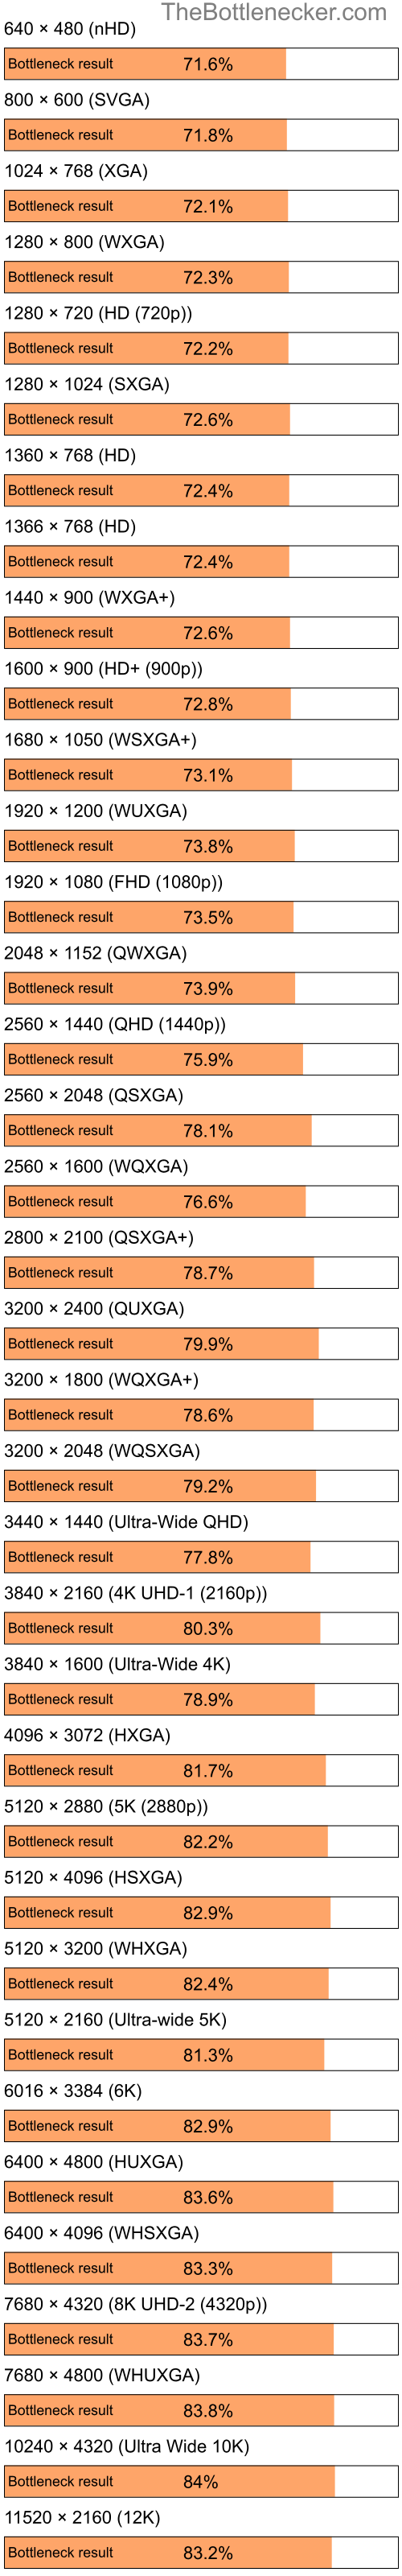 Bottleneck results by resolution for Intel Celeron M and NVIDIA GeForce 6150SE nForce 430 in Processor Intense Tasks